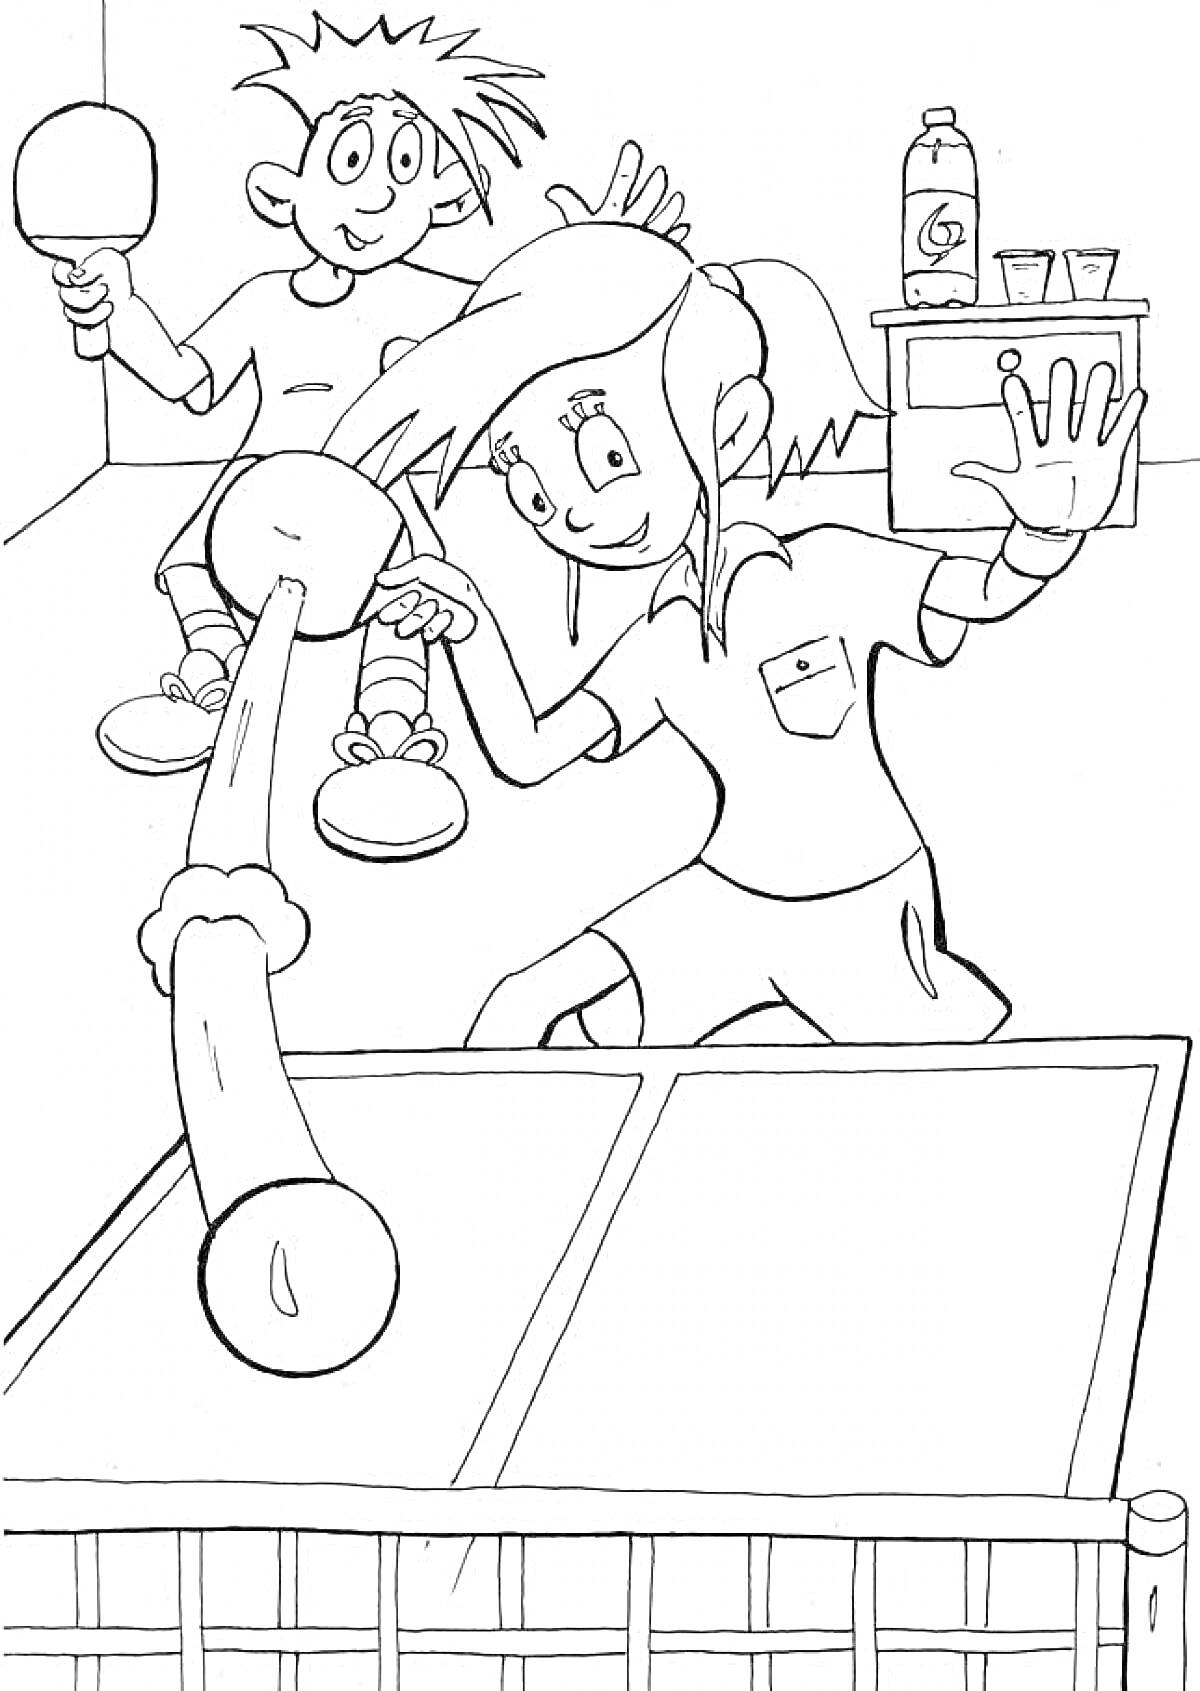 Раскраска Два ребенка играют в настольный теннис, рядом бутылка и стаканчики на столе